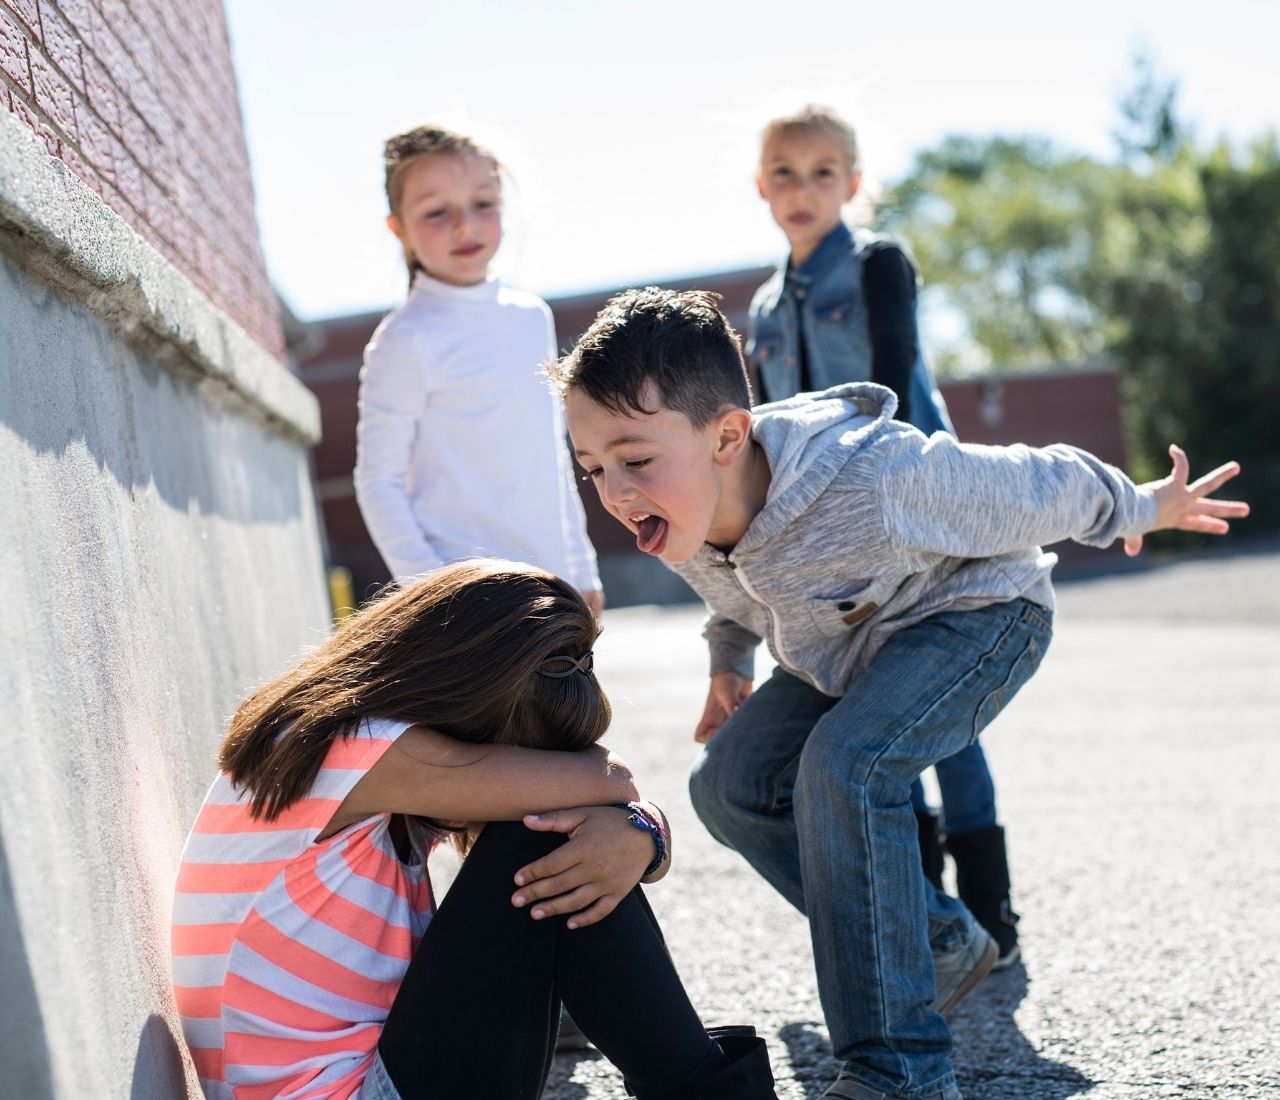 Bambini aggressivi: perché lo sono e come intervenire